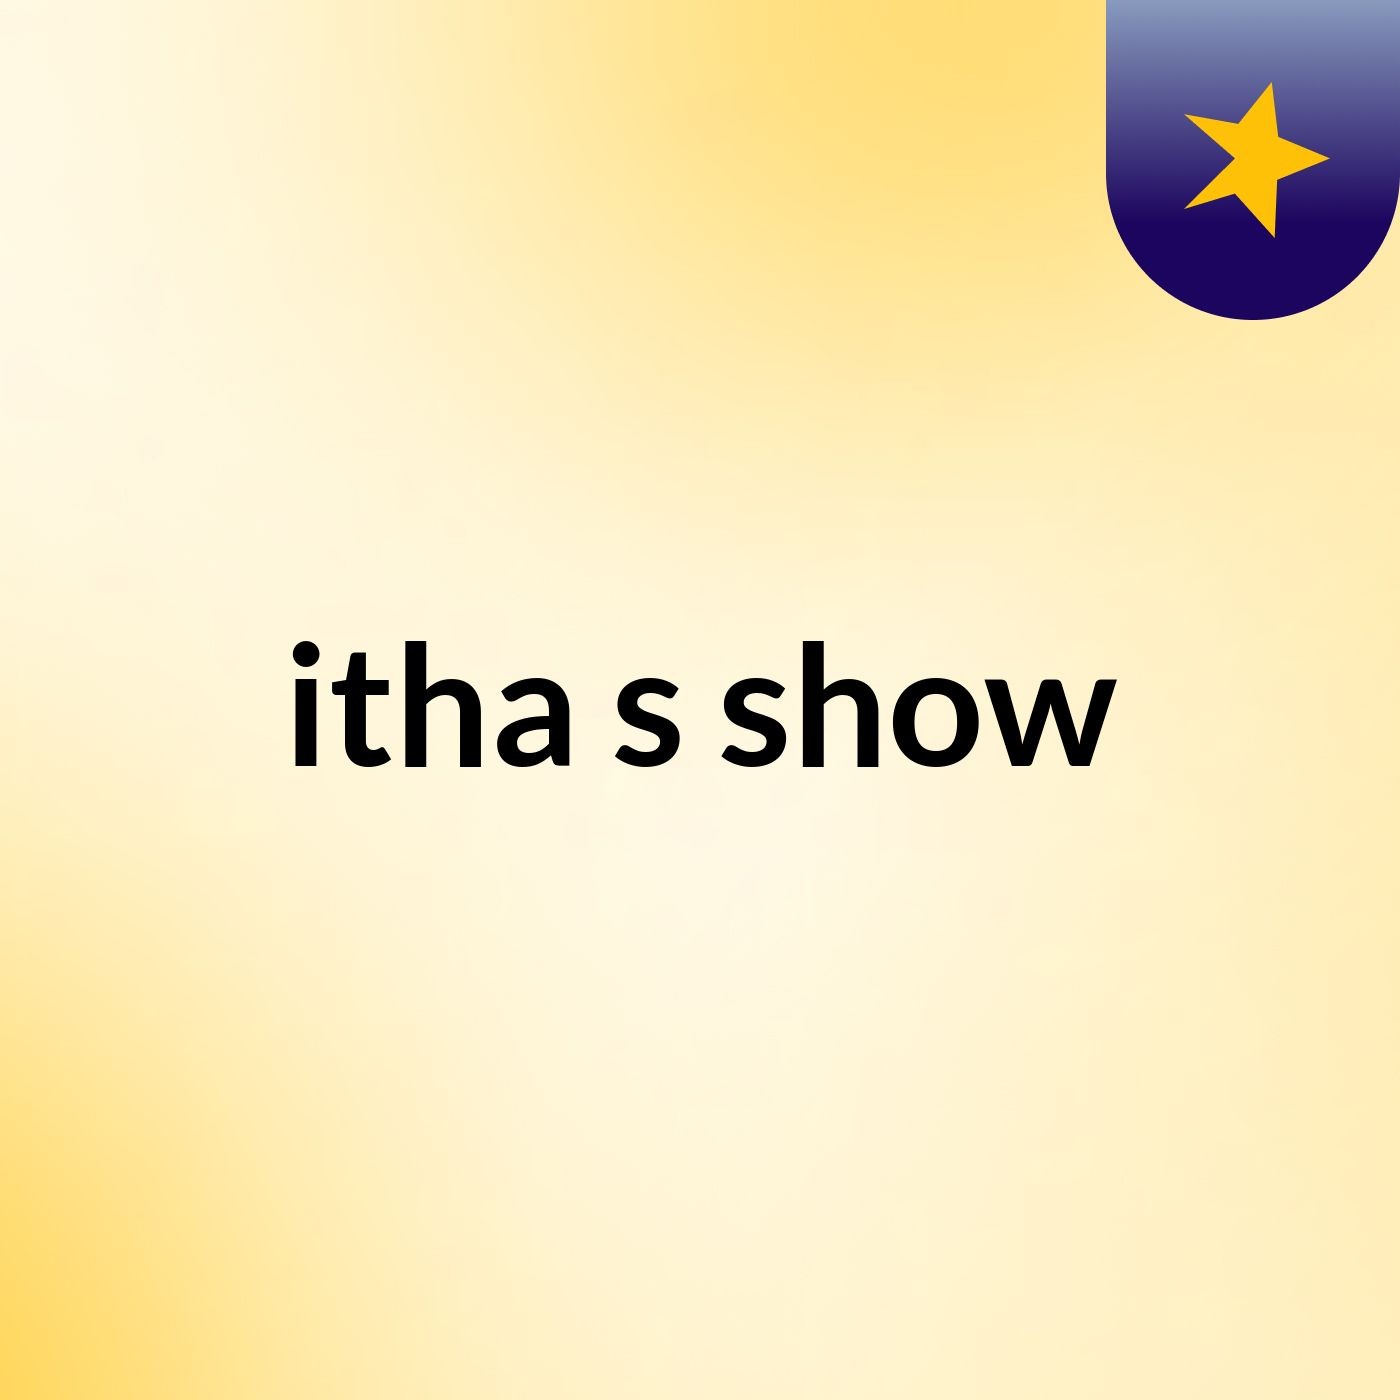 itha's show